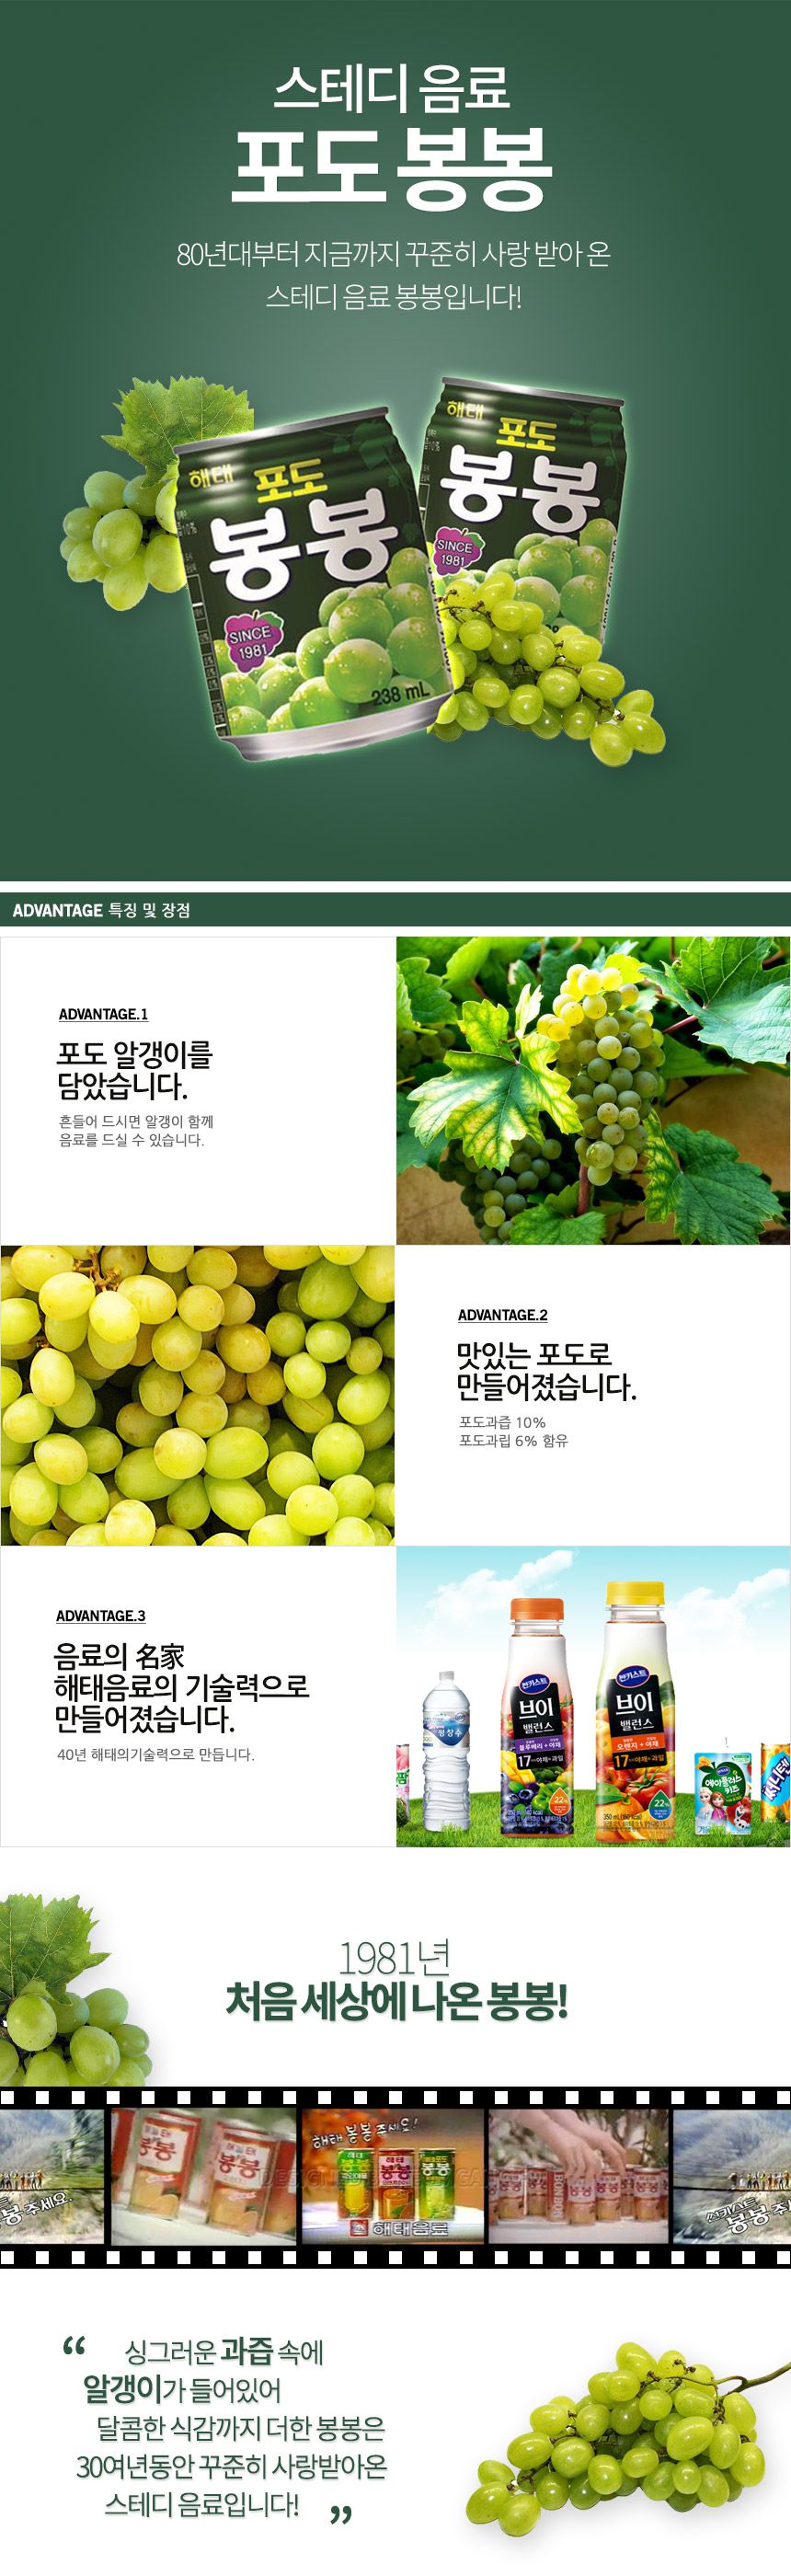 韓國食品-[해태] 포도봉봉 238ml*12